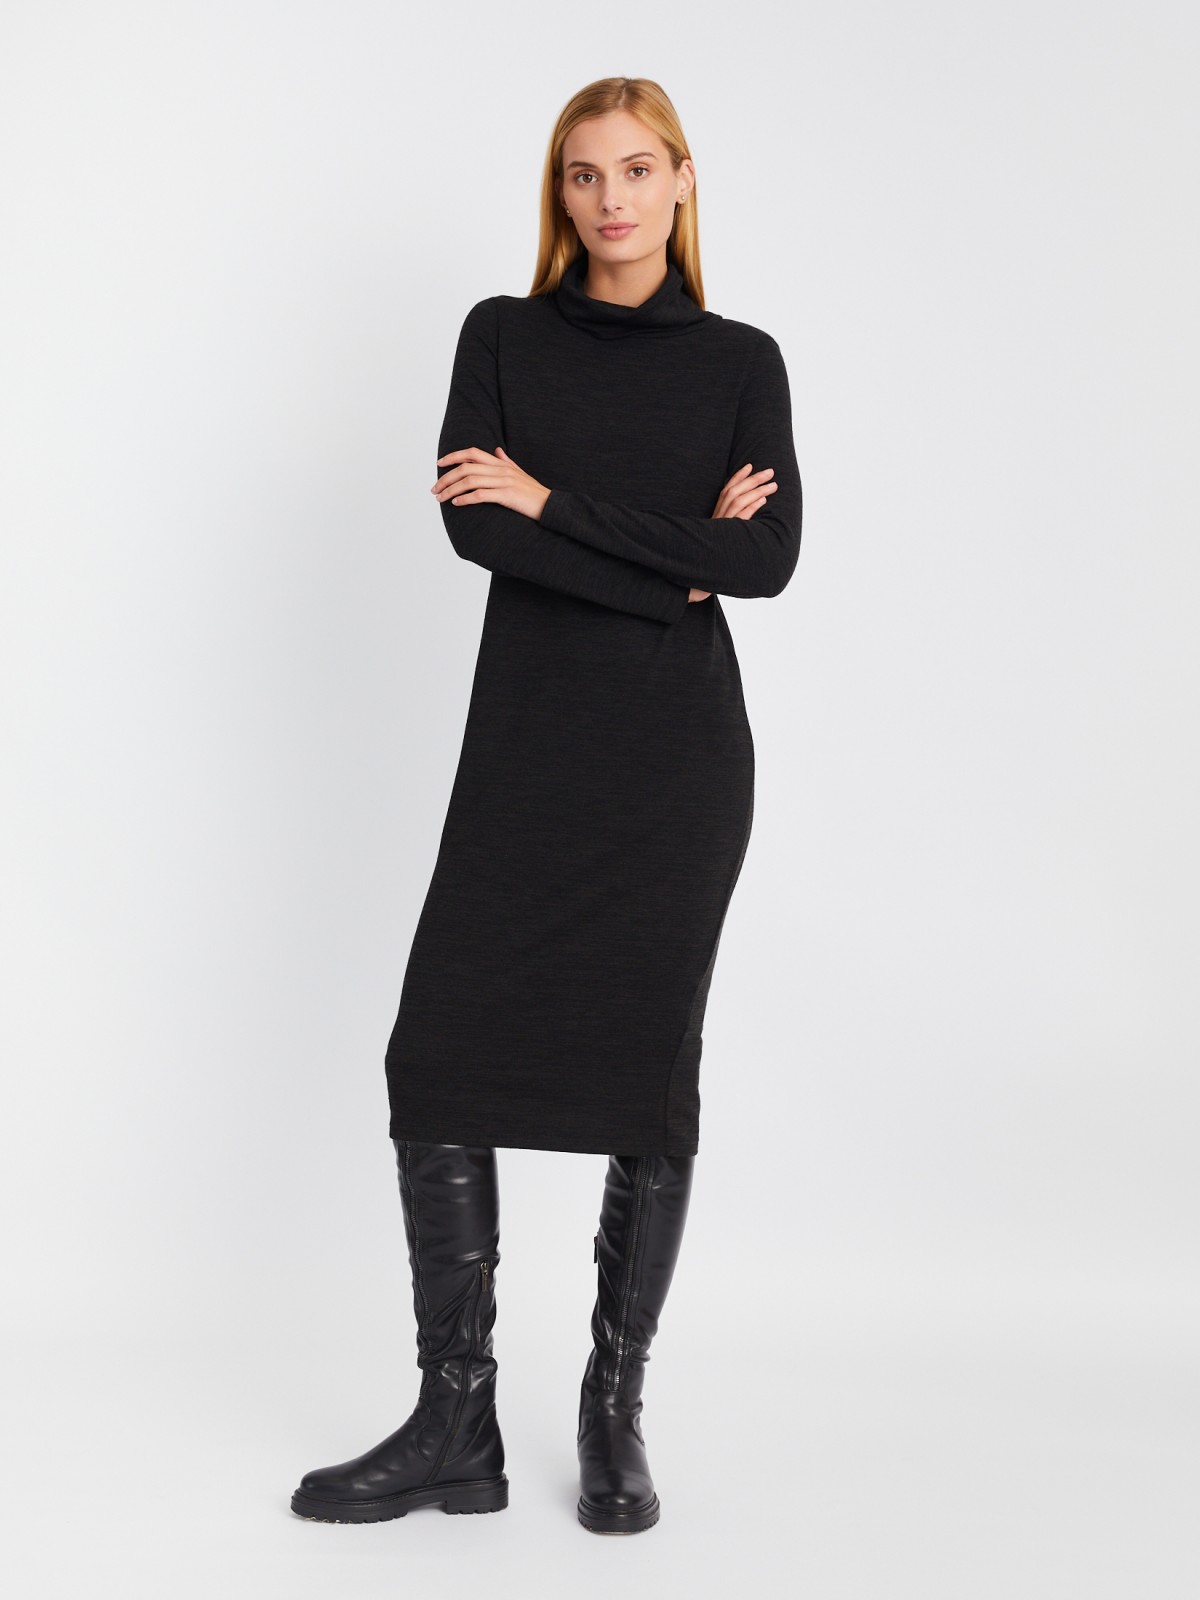 Трикотажное платье-свитер длины миди с высоким горлом zolla 02334819F062, цвет темно-серый, размер XS - фото 2